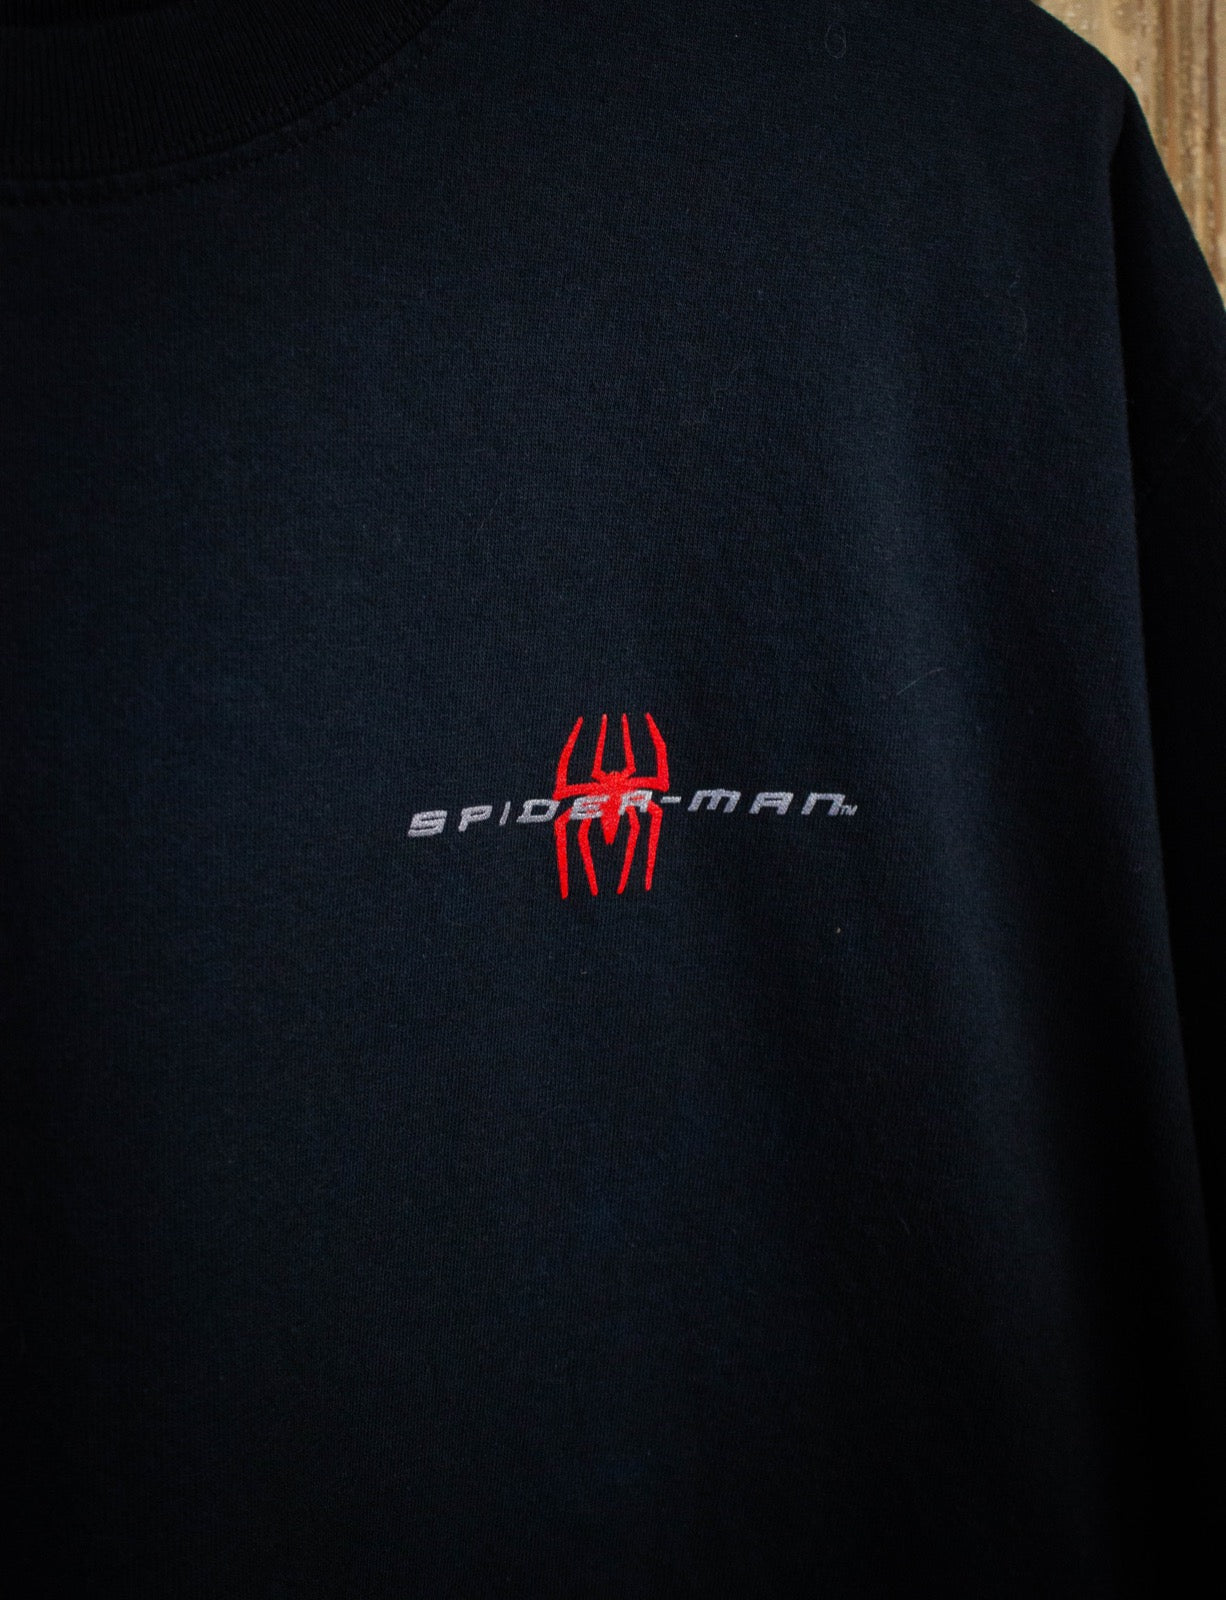 Vintage Spider-Man Movie Promo Graphic T Shirt 2002 Black XL